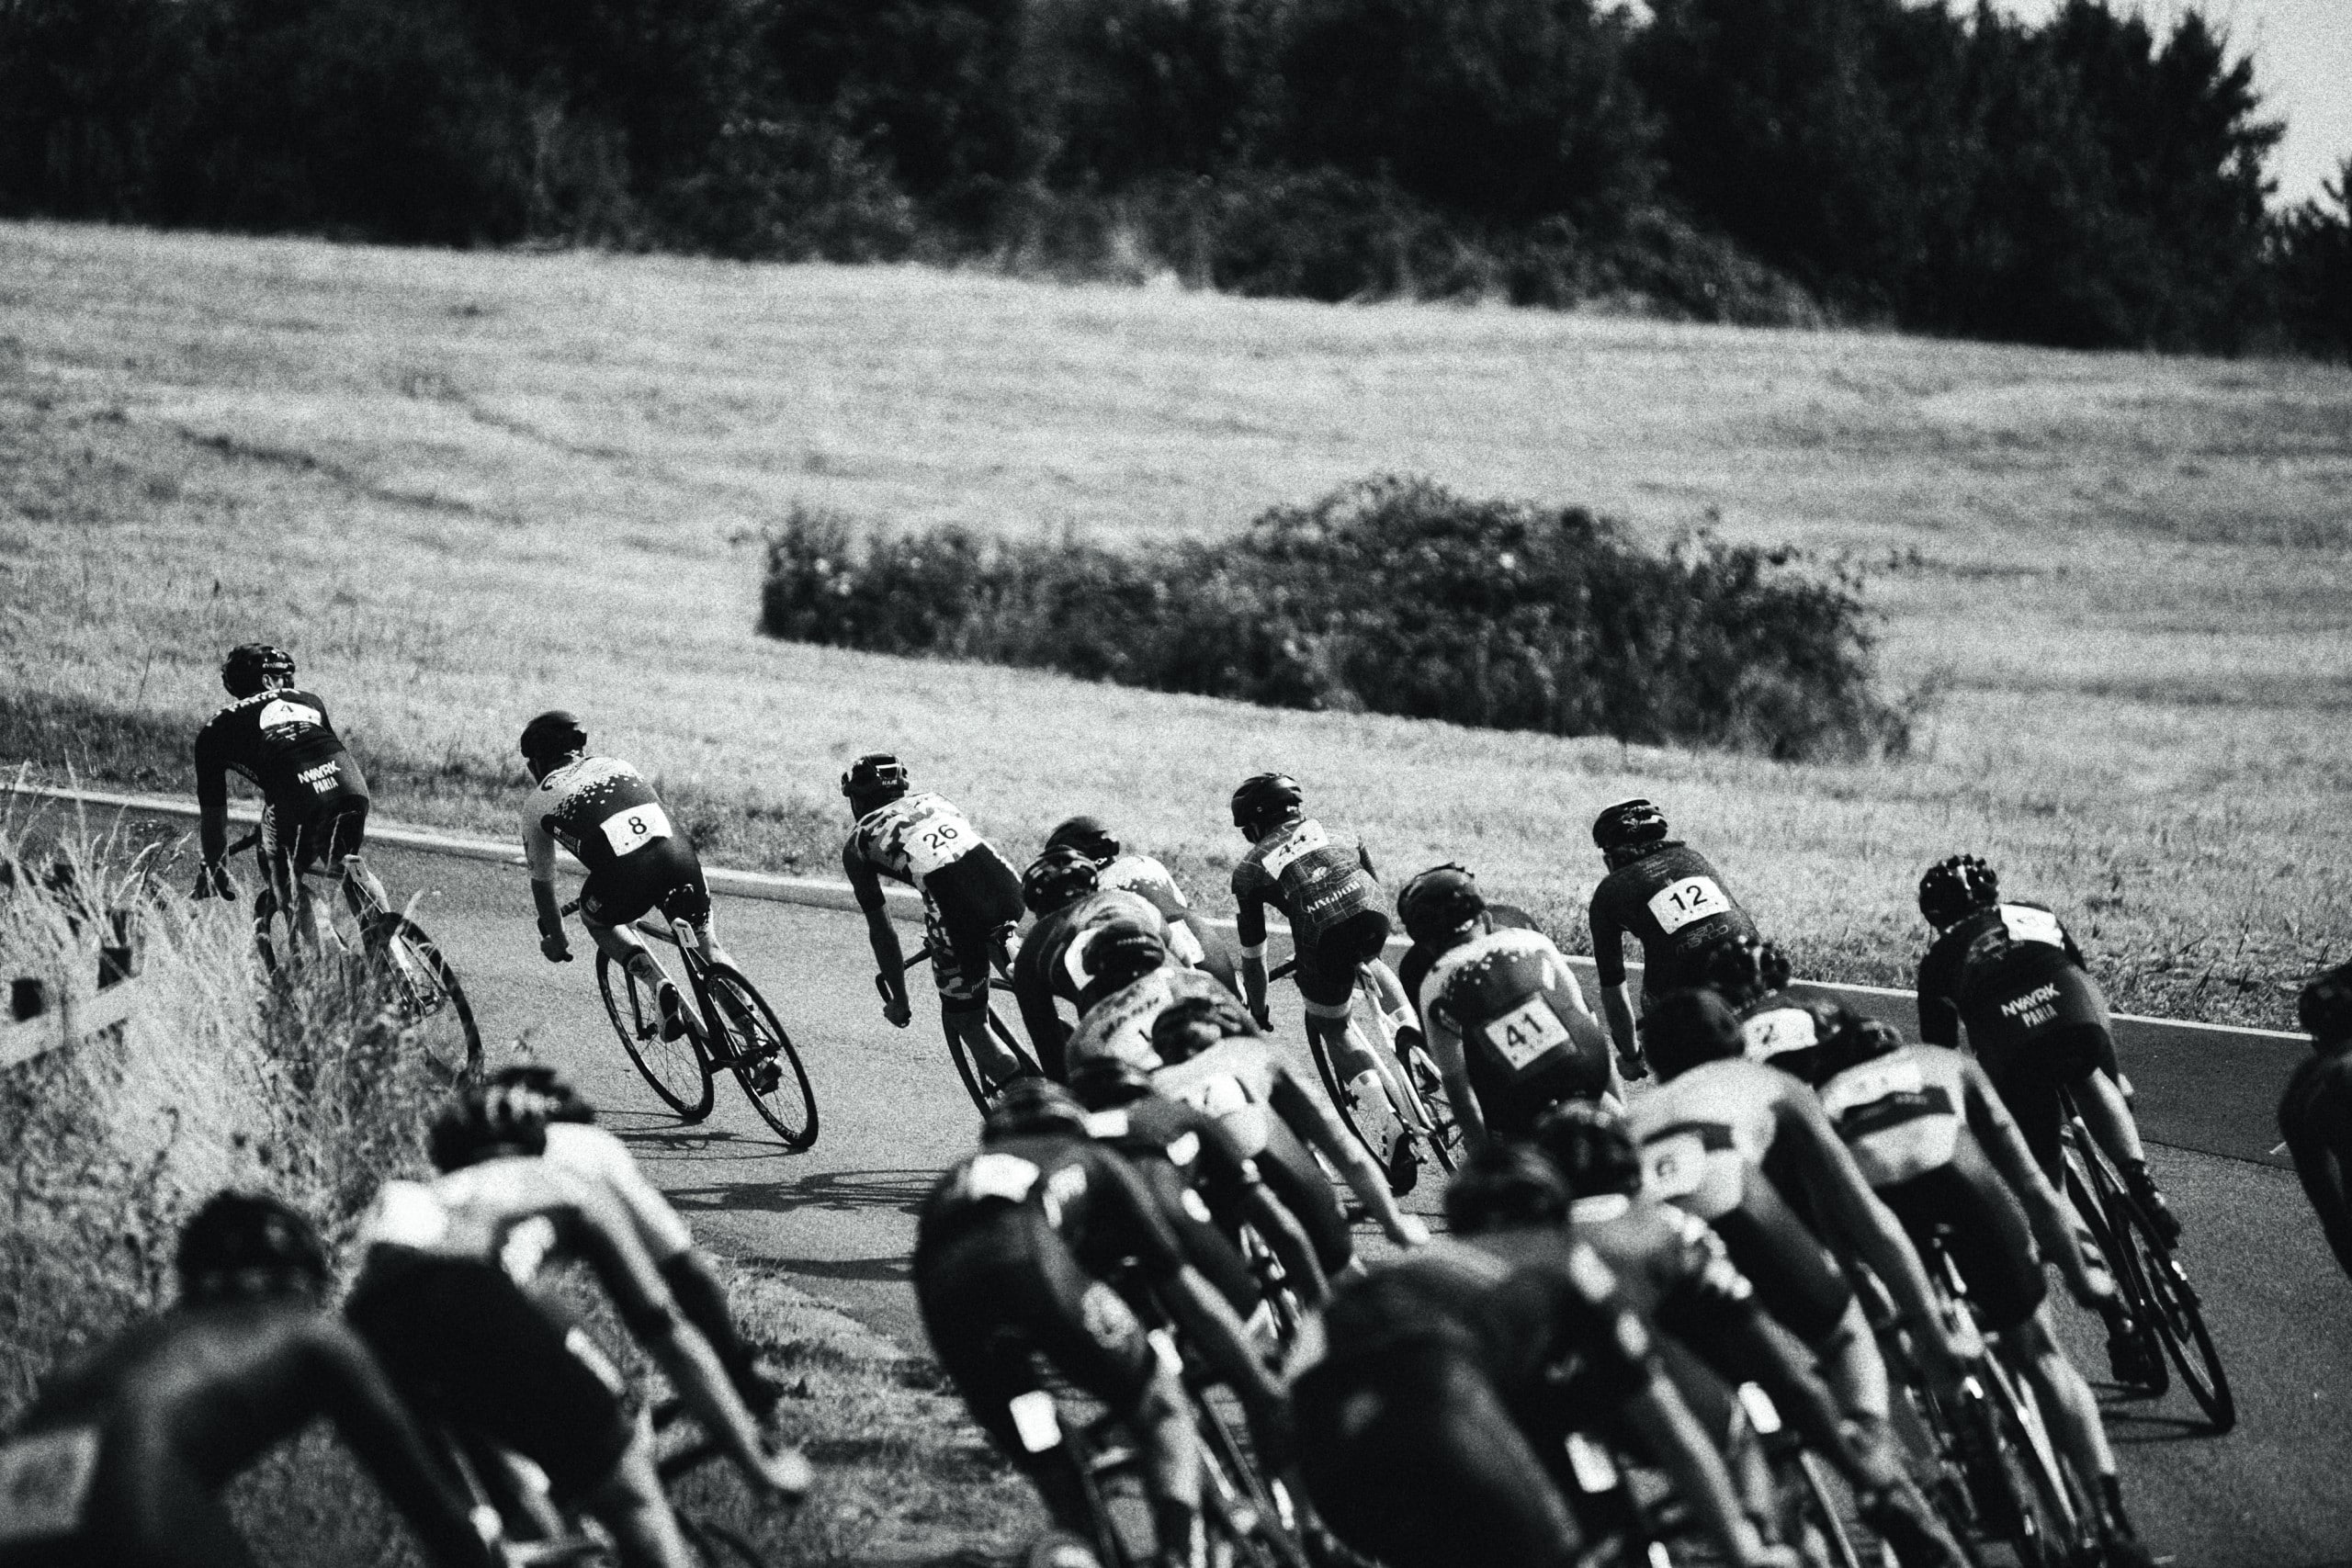 Eine Gruppe von Radrennfahrern geht in eine Linkskurve, Aufnahme in Schwarz-Weiß. Foto: Jonny Kennaugh via Unsplash